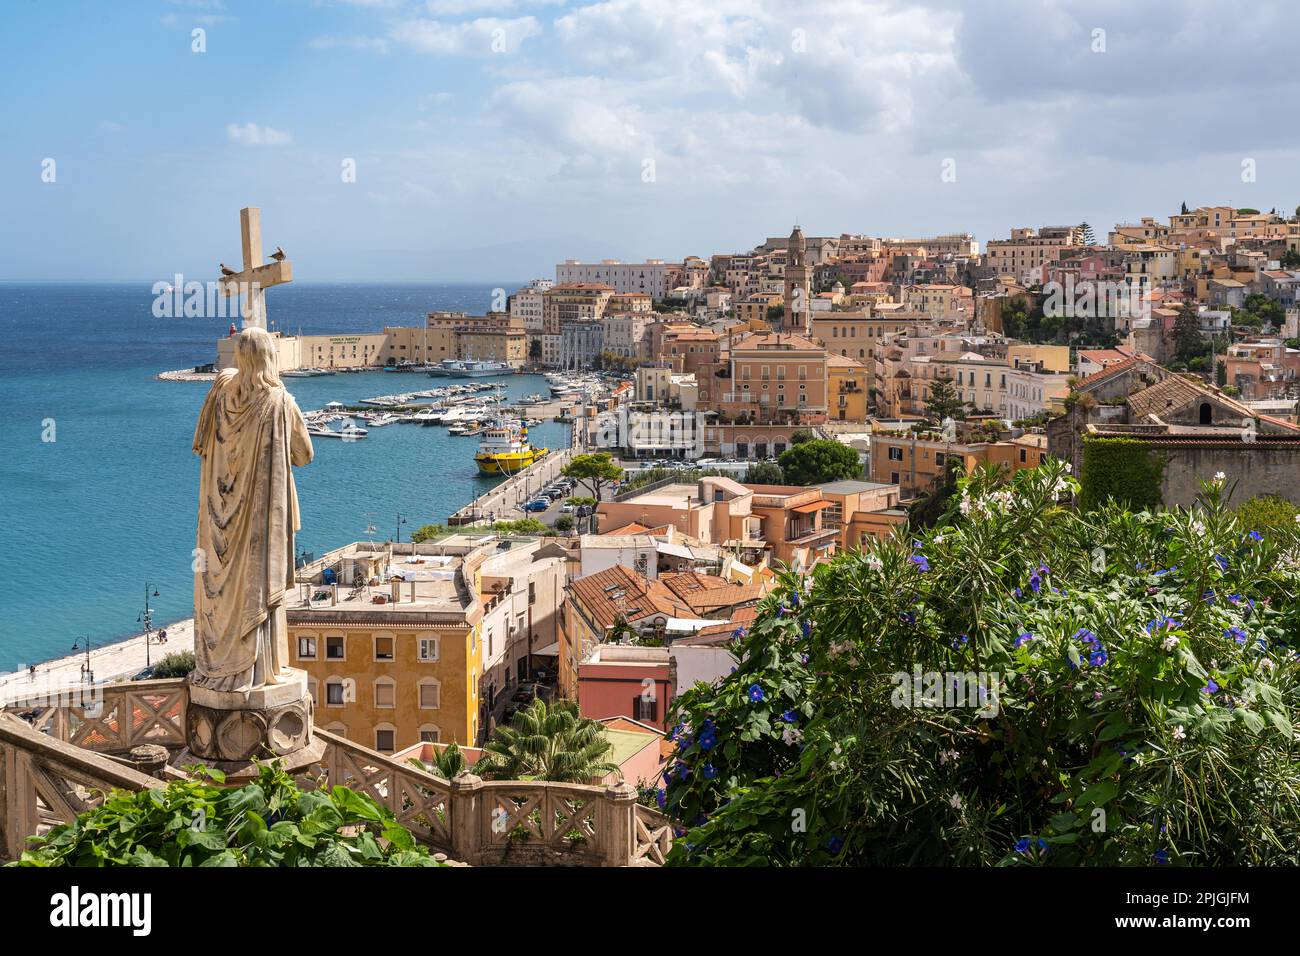 Vue sur Gaeta, une ville historique et une destination touristique populaire sur la mer Méditerranée, région du Latium, Italie Banque D'Images